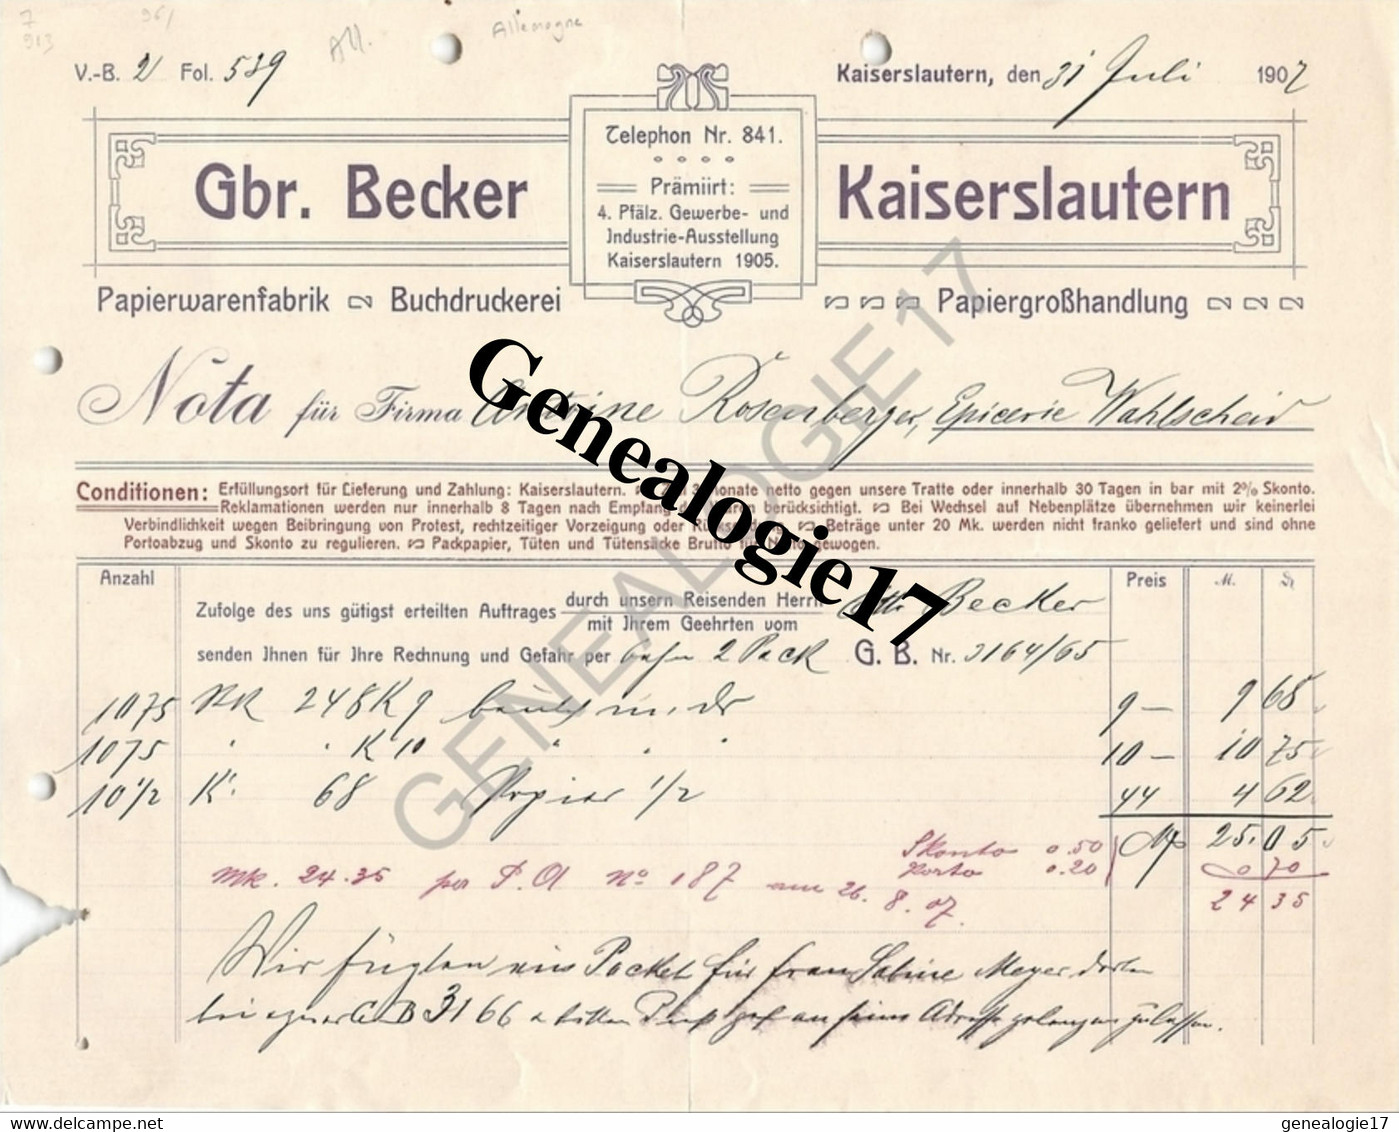 96 0692 ALLEMAGNE KAISERLAUTERN Rhenanie Palatinat 1907 Papier Warenfabrik GBR. BECKER Buchdruckerei - Imprenta & Papelería